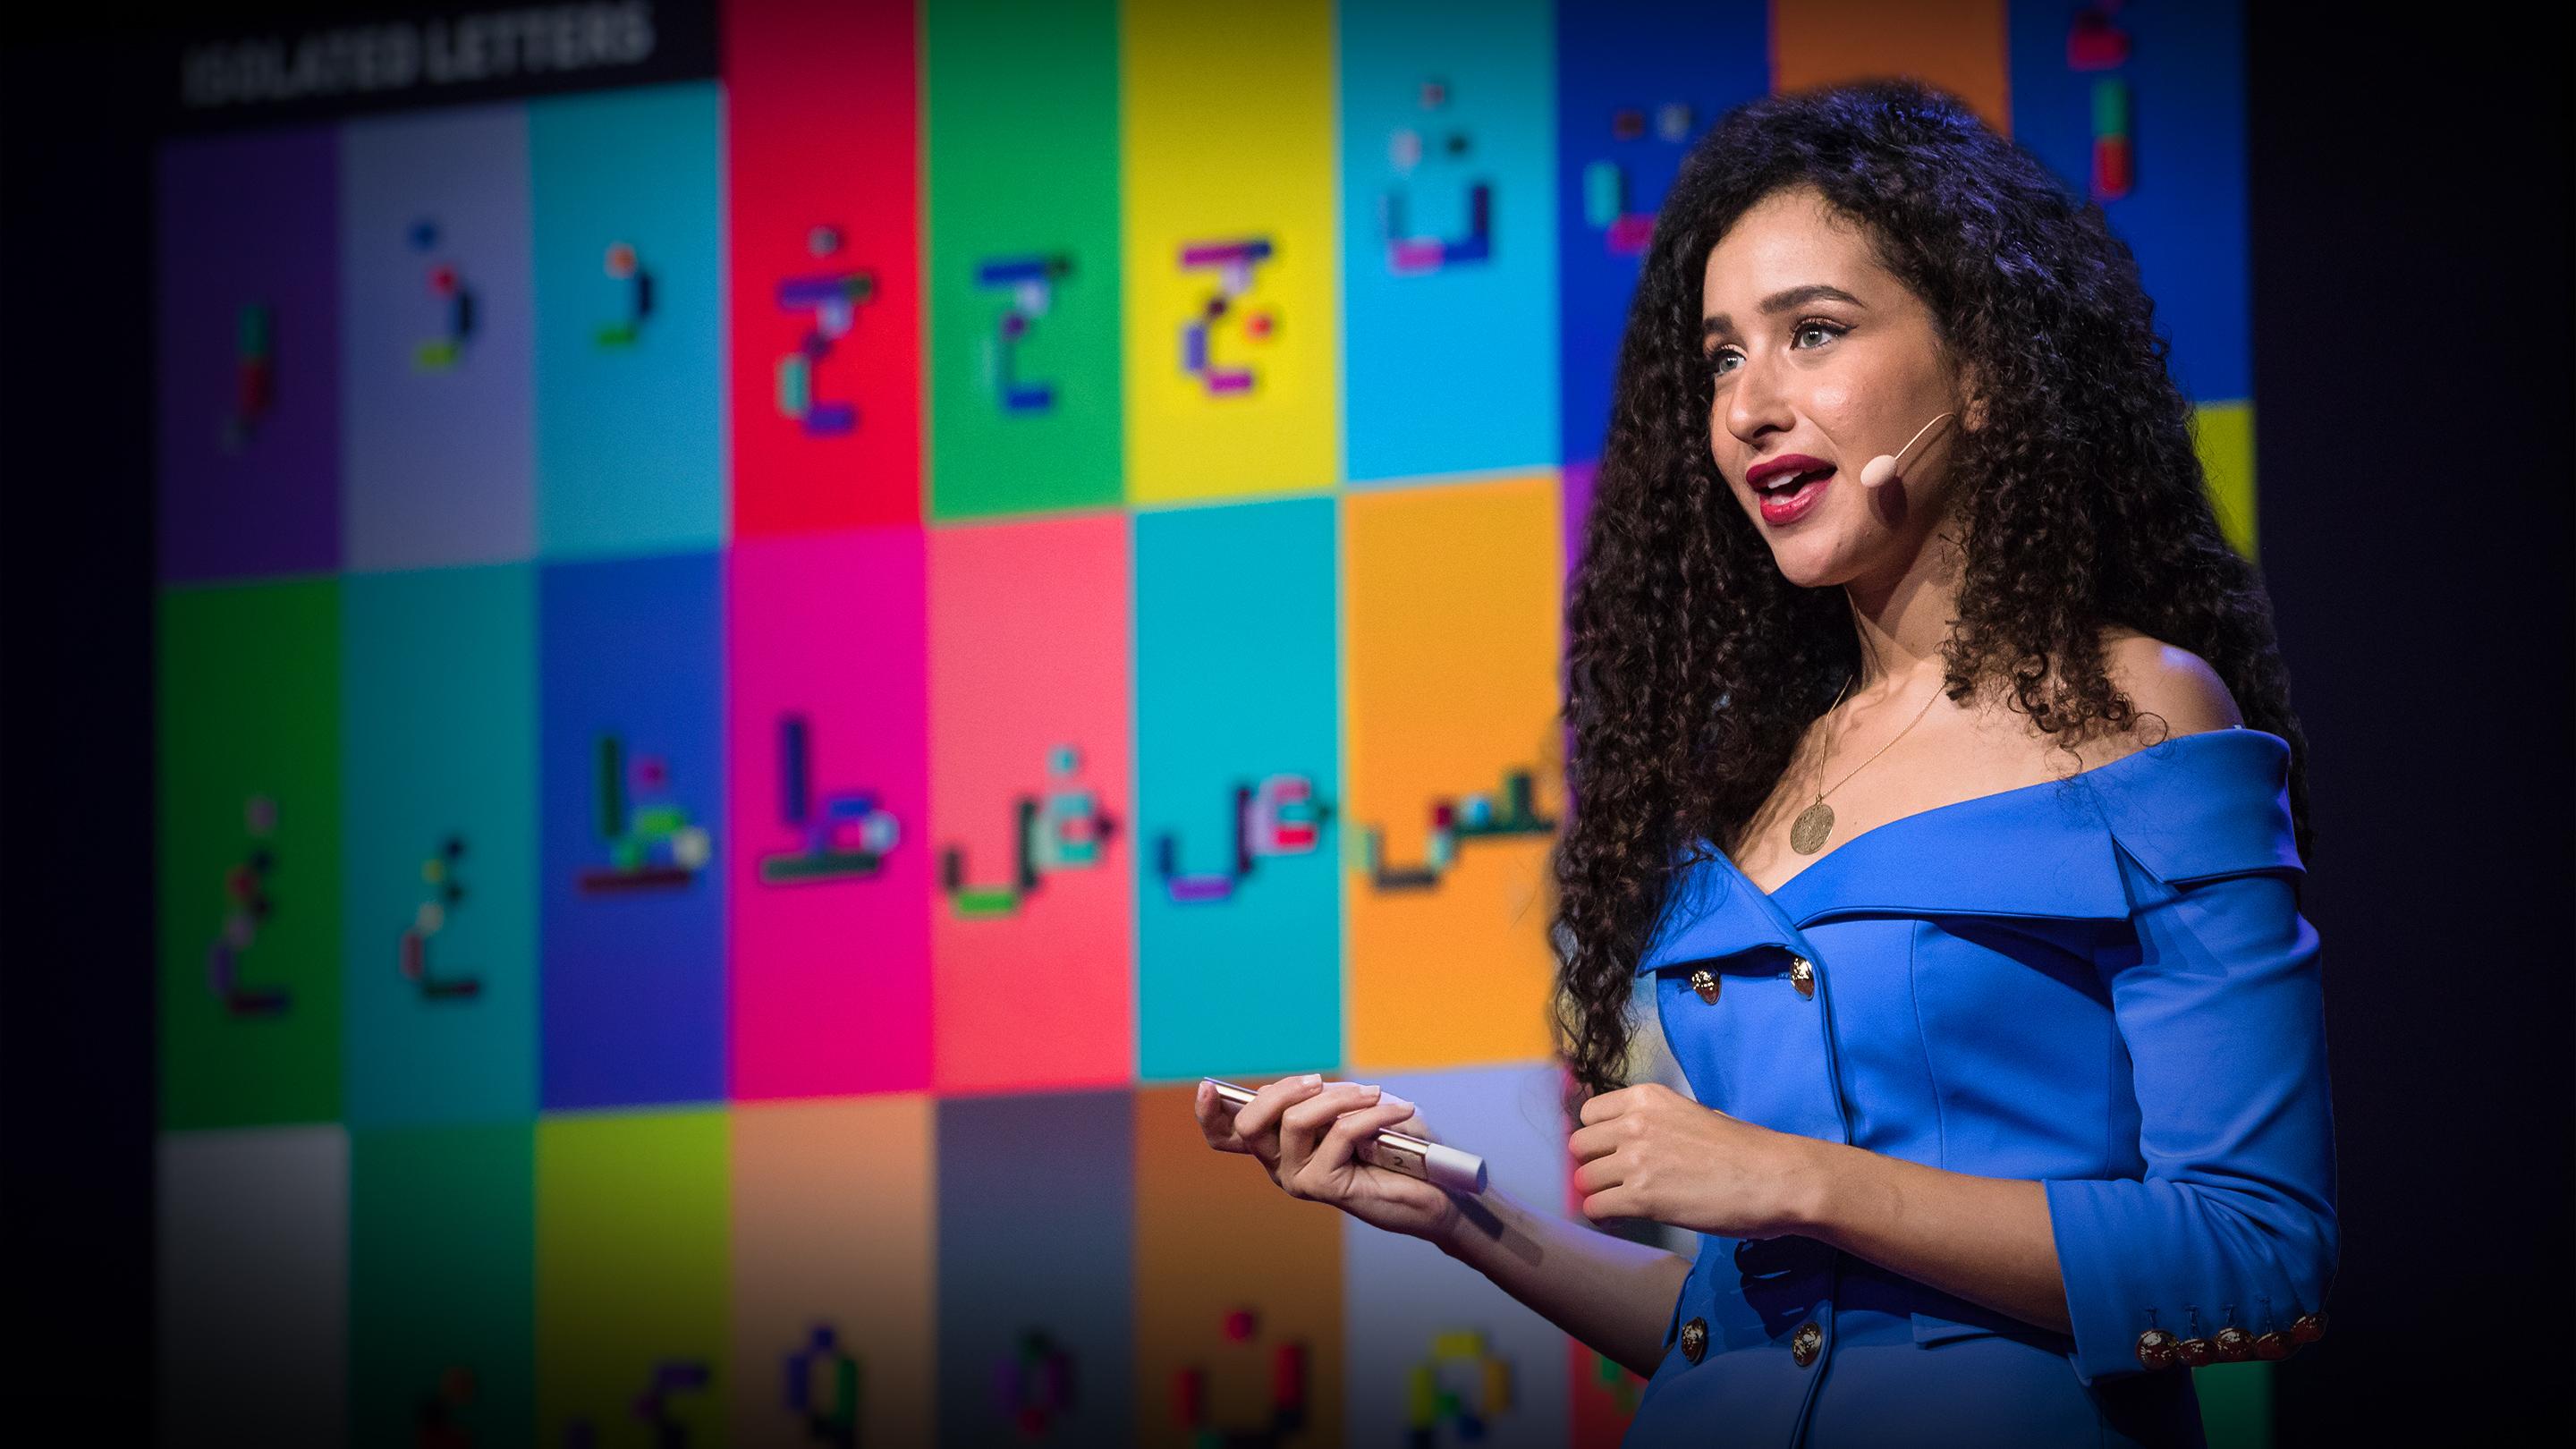 Как я обучаю арабскому с помощью LEGO | Гхада Вали